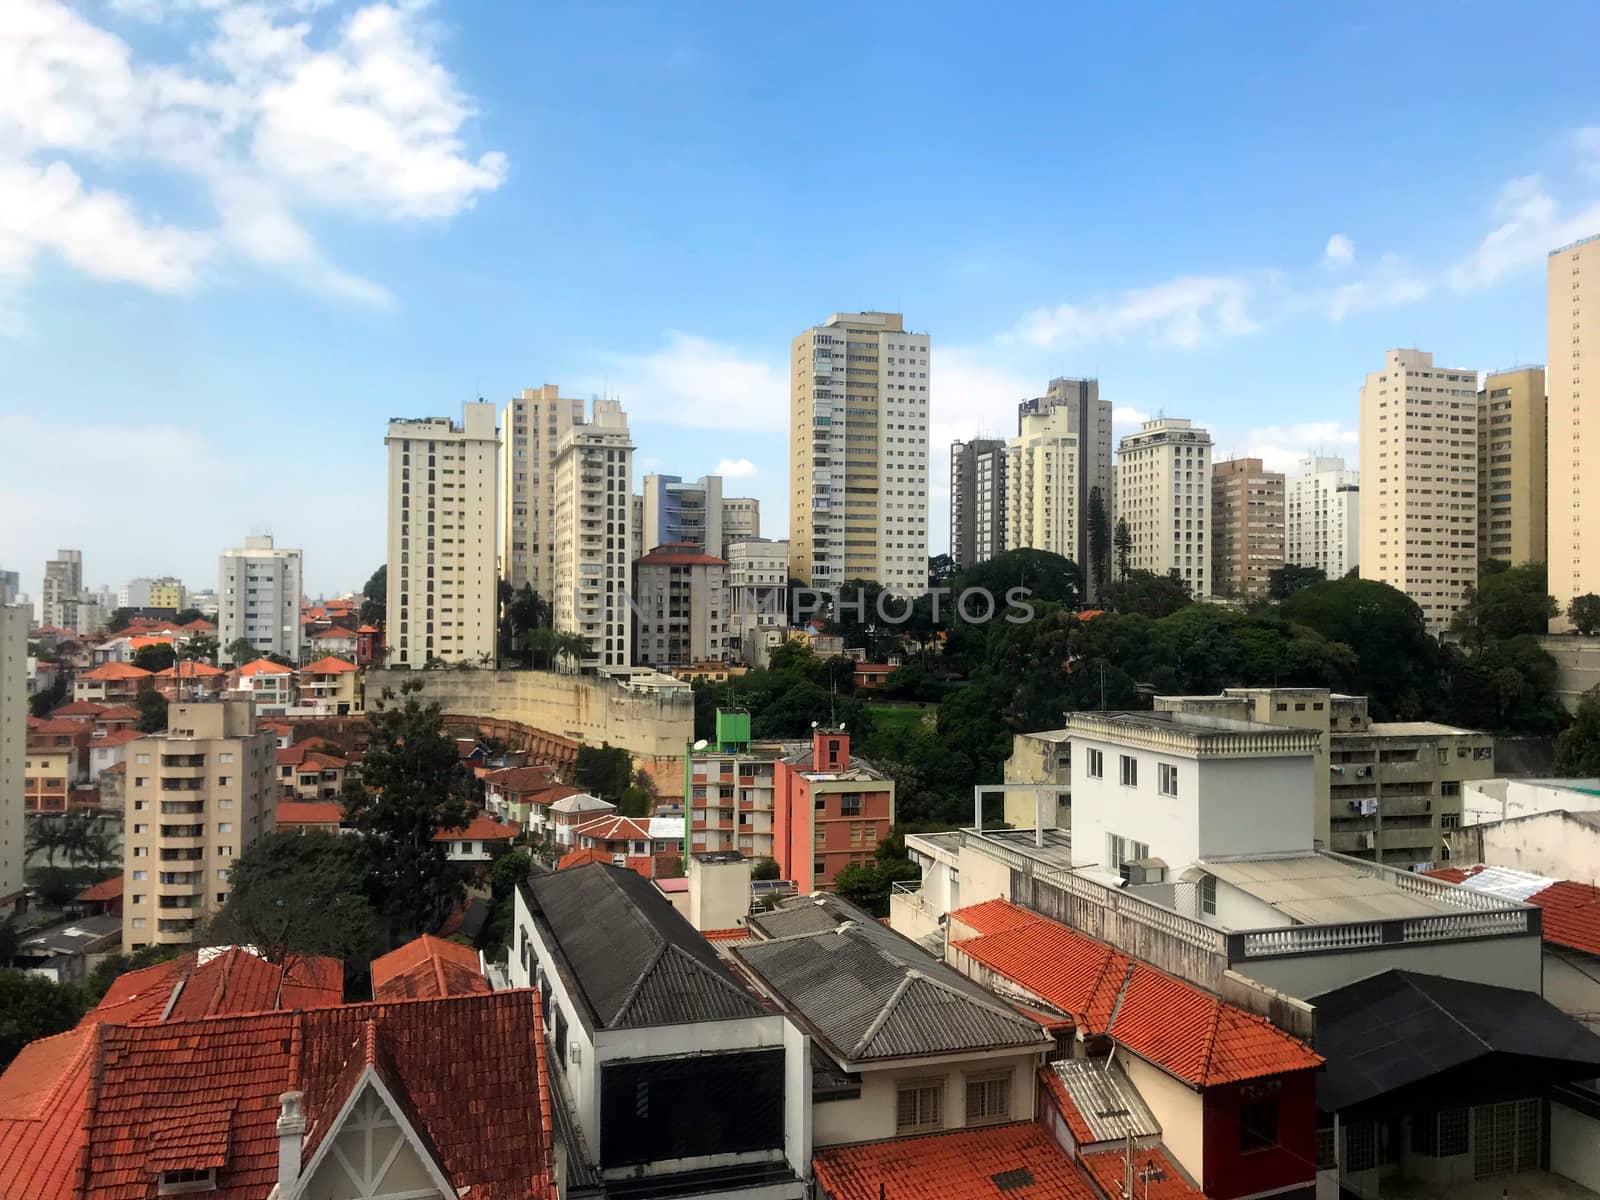 Cityscape of the Bela Vista area in Sao Paulo, Brazil